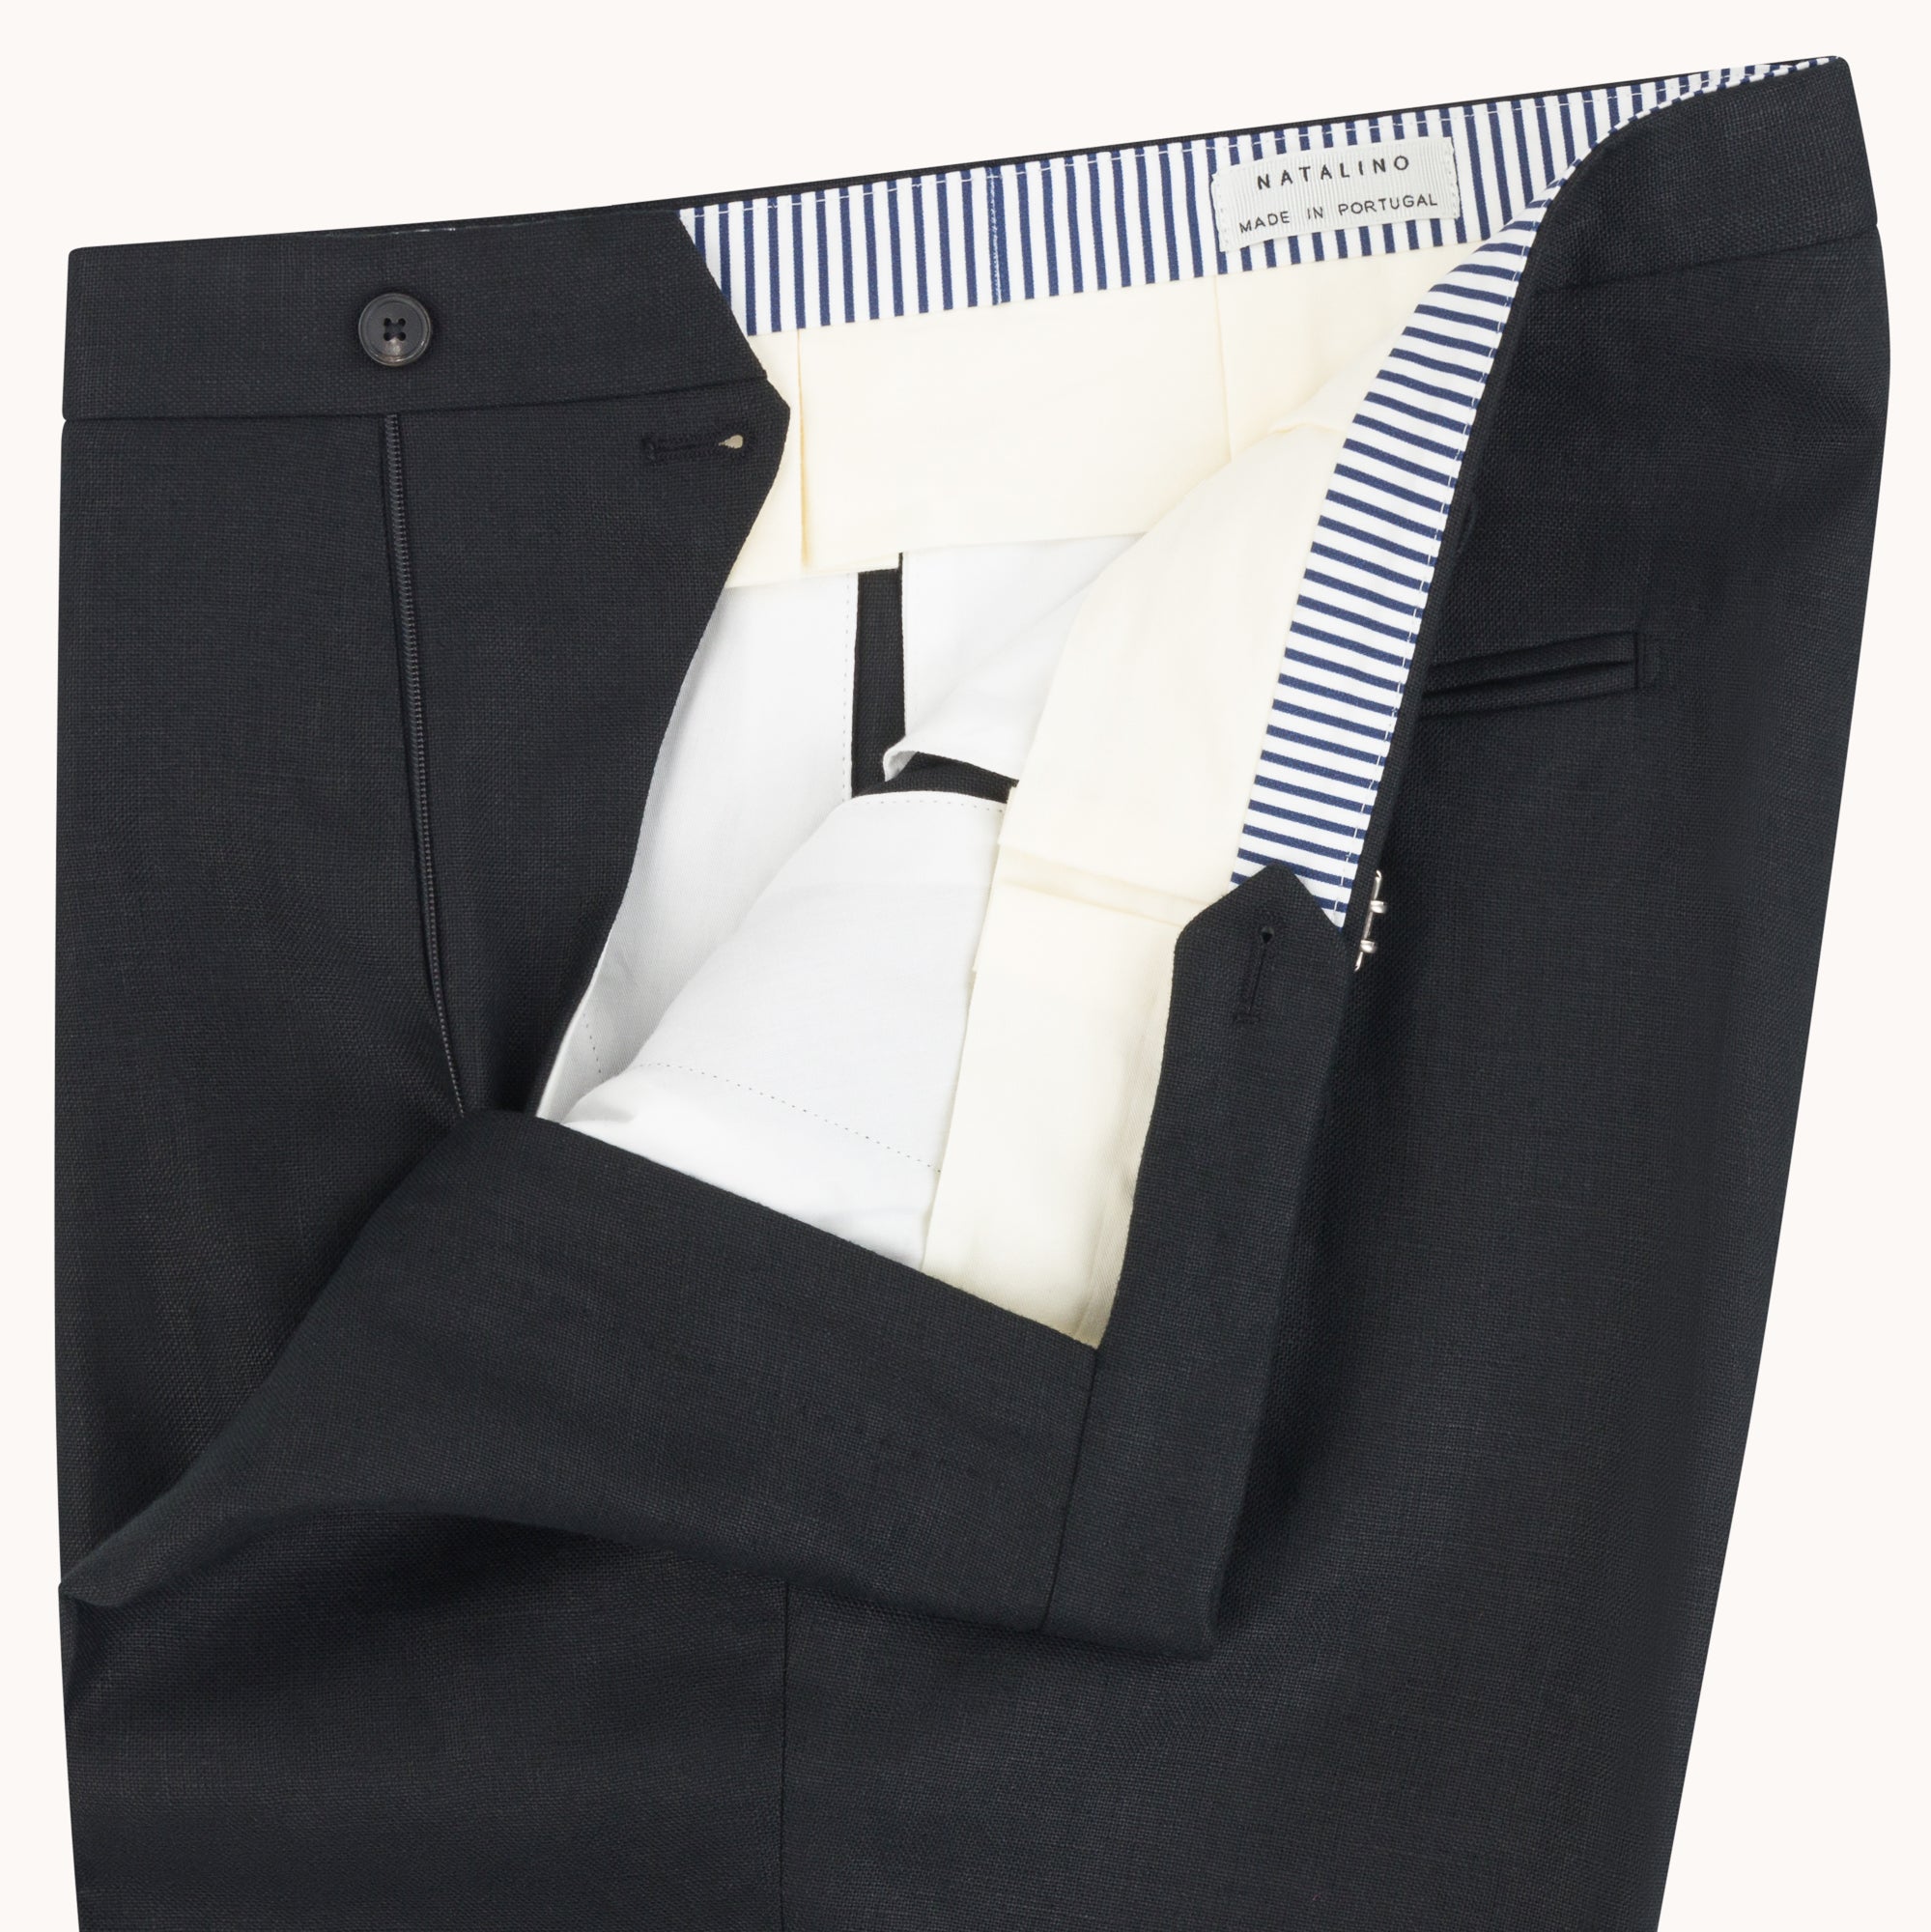 Single Pleat Trouser - Black Linen